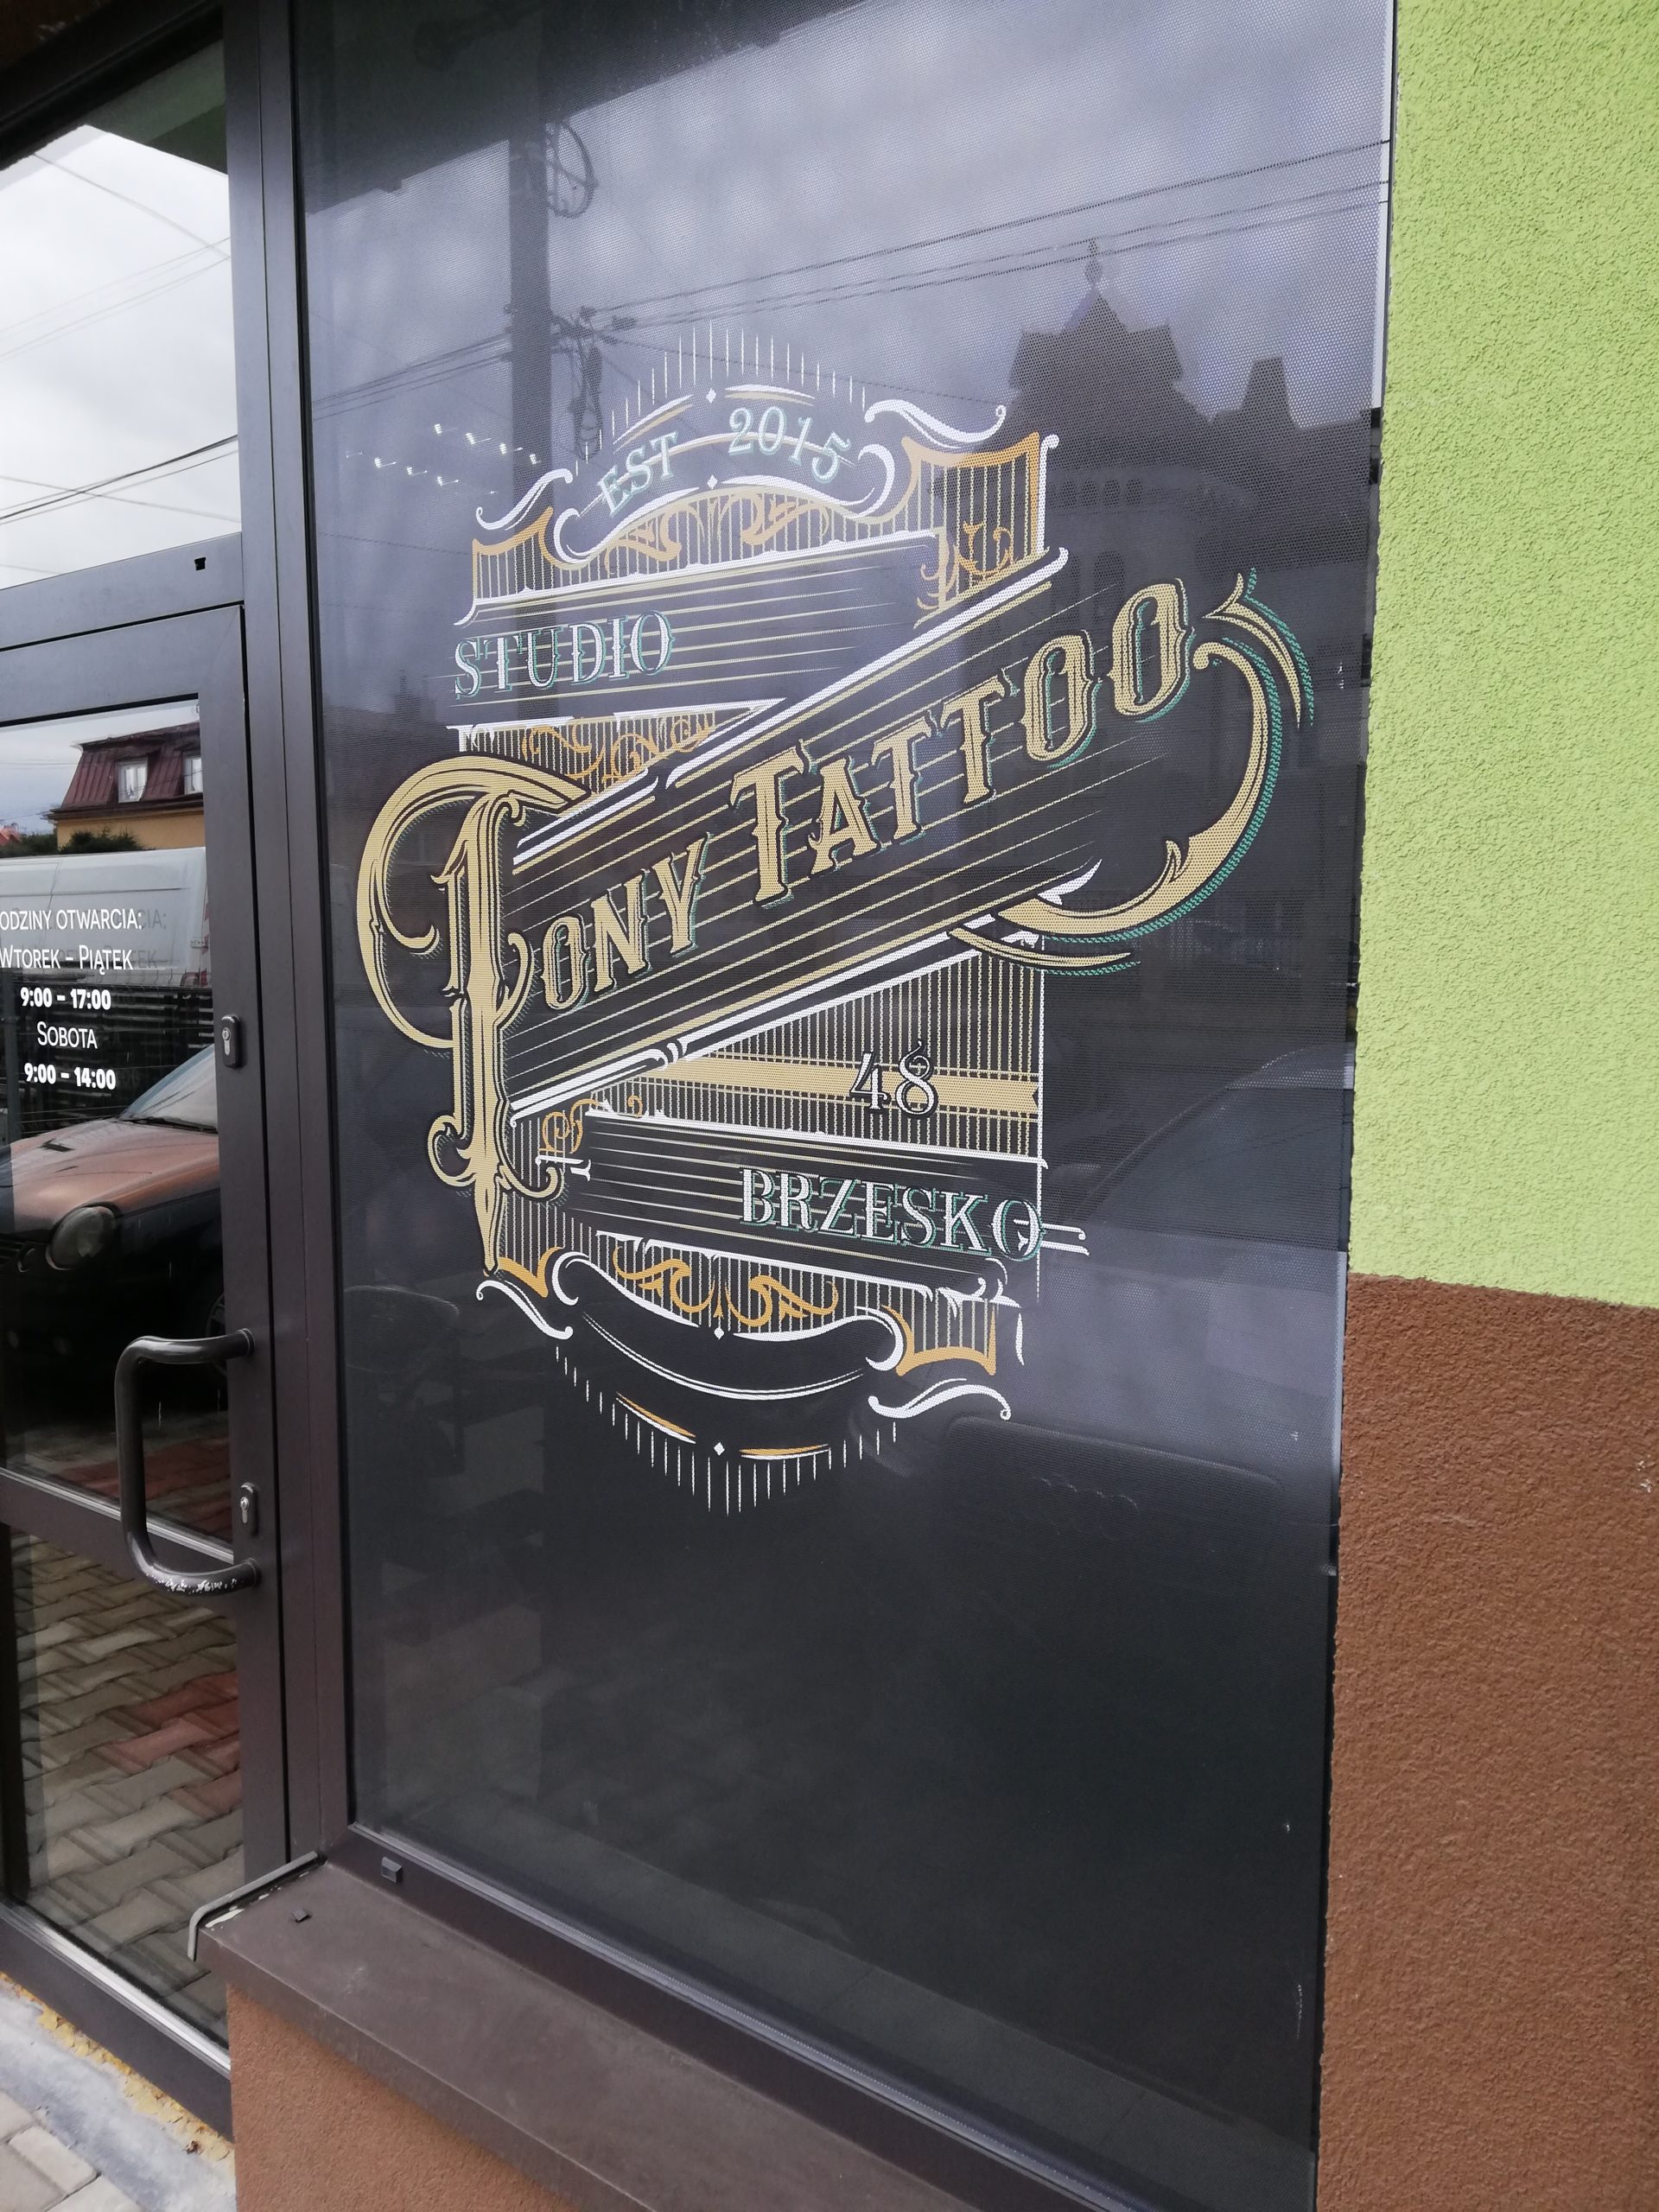 Realizacja reklamy Tony Tatoo Salon Tatuażu